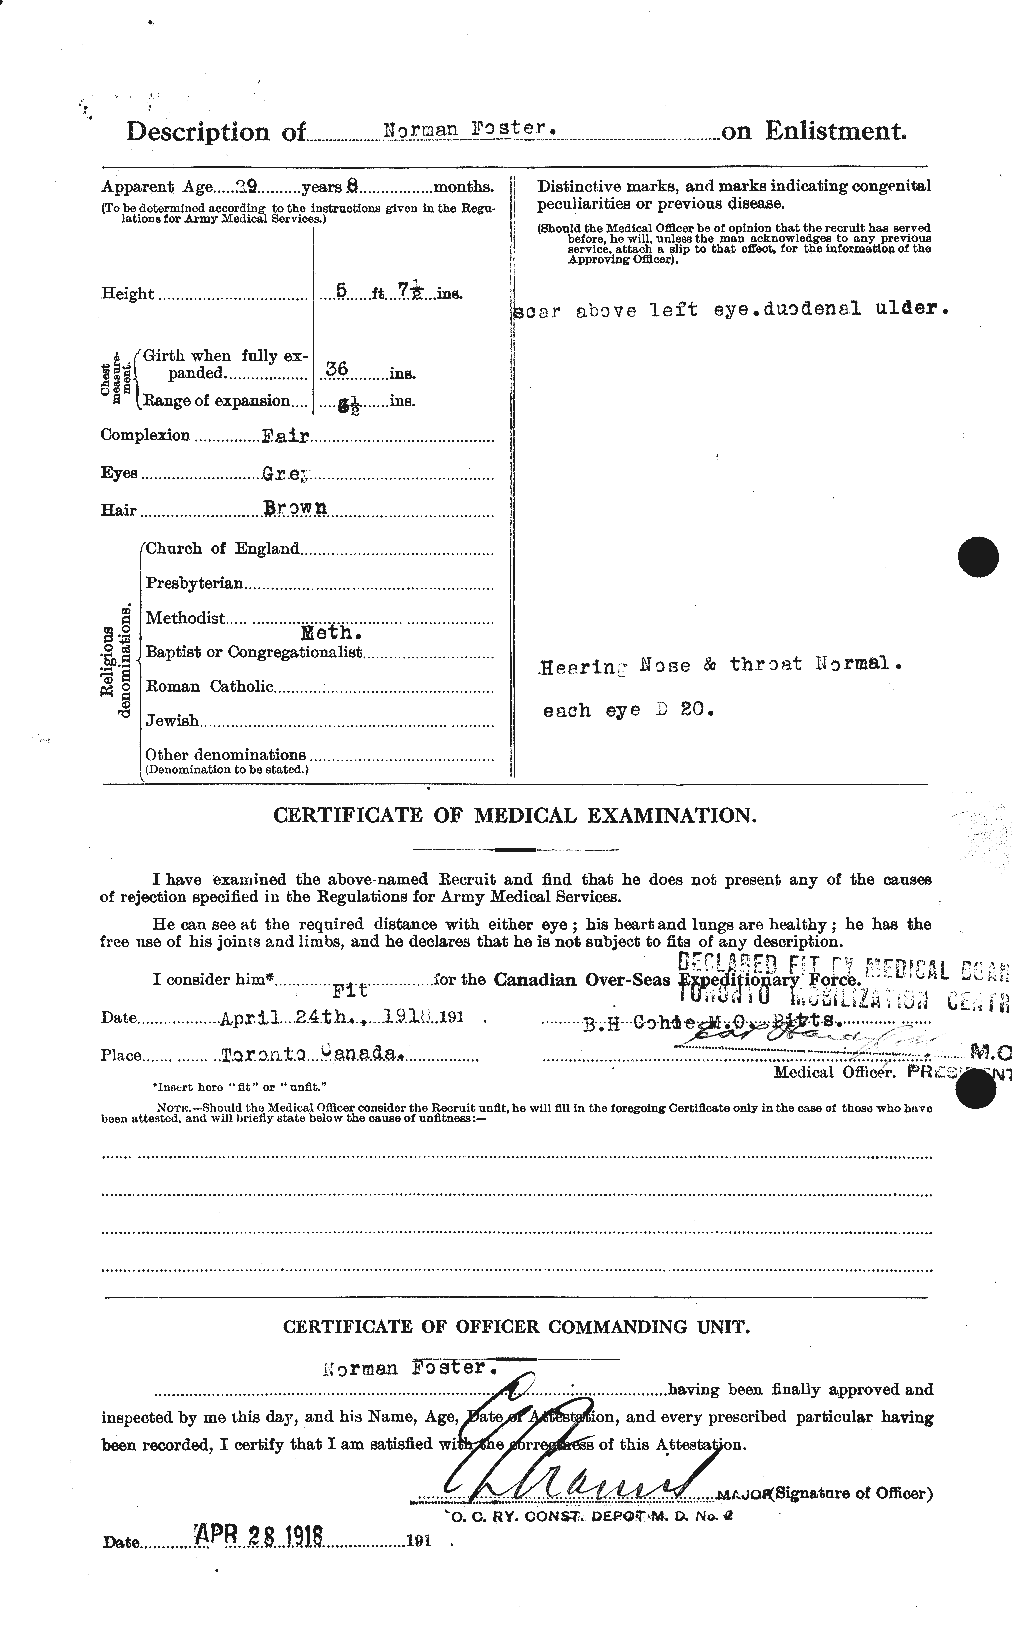 Dossiers du Personnel de la Première Guerre mondiale - CEC 333432b